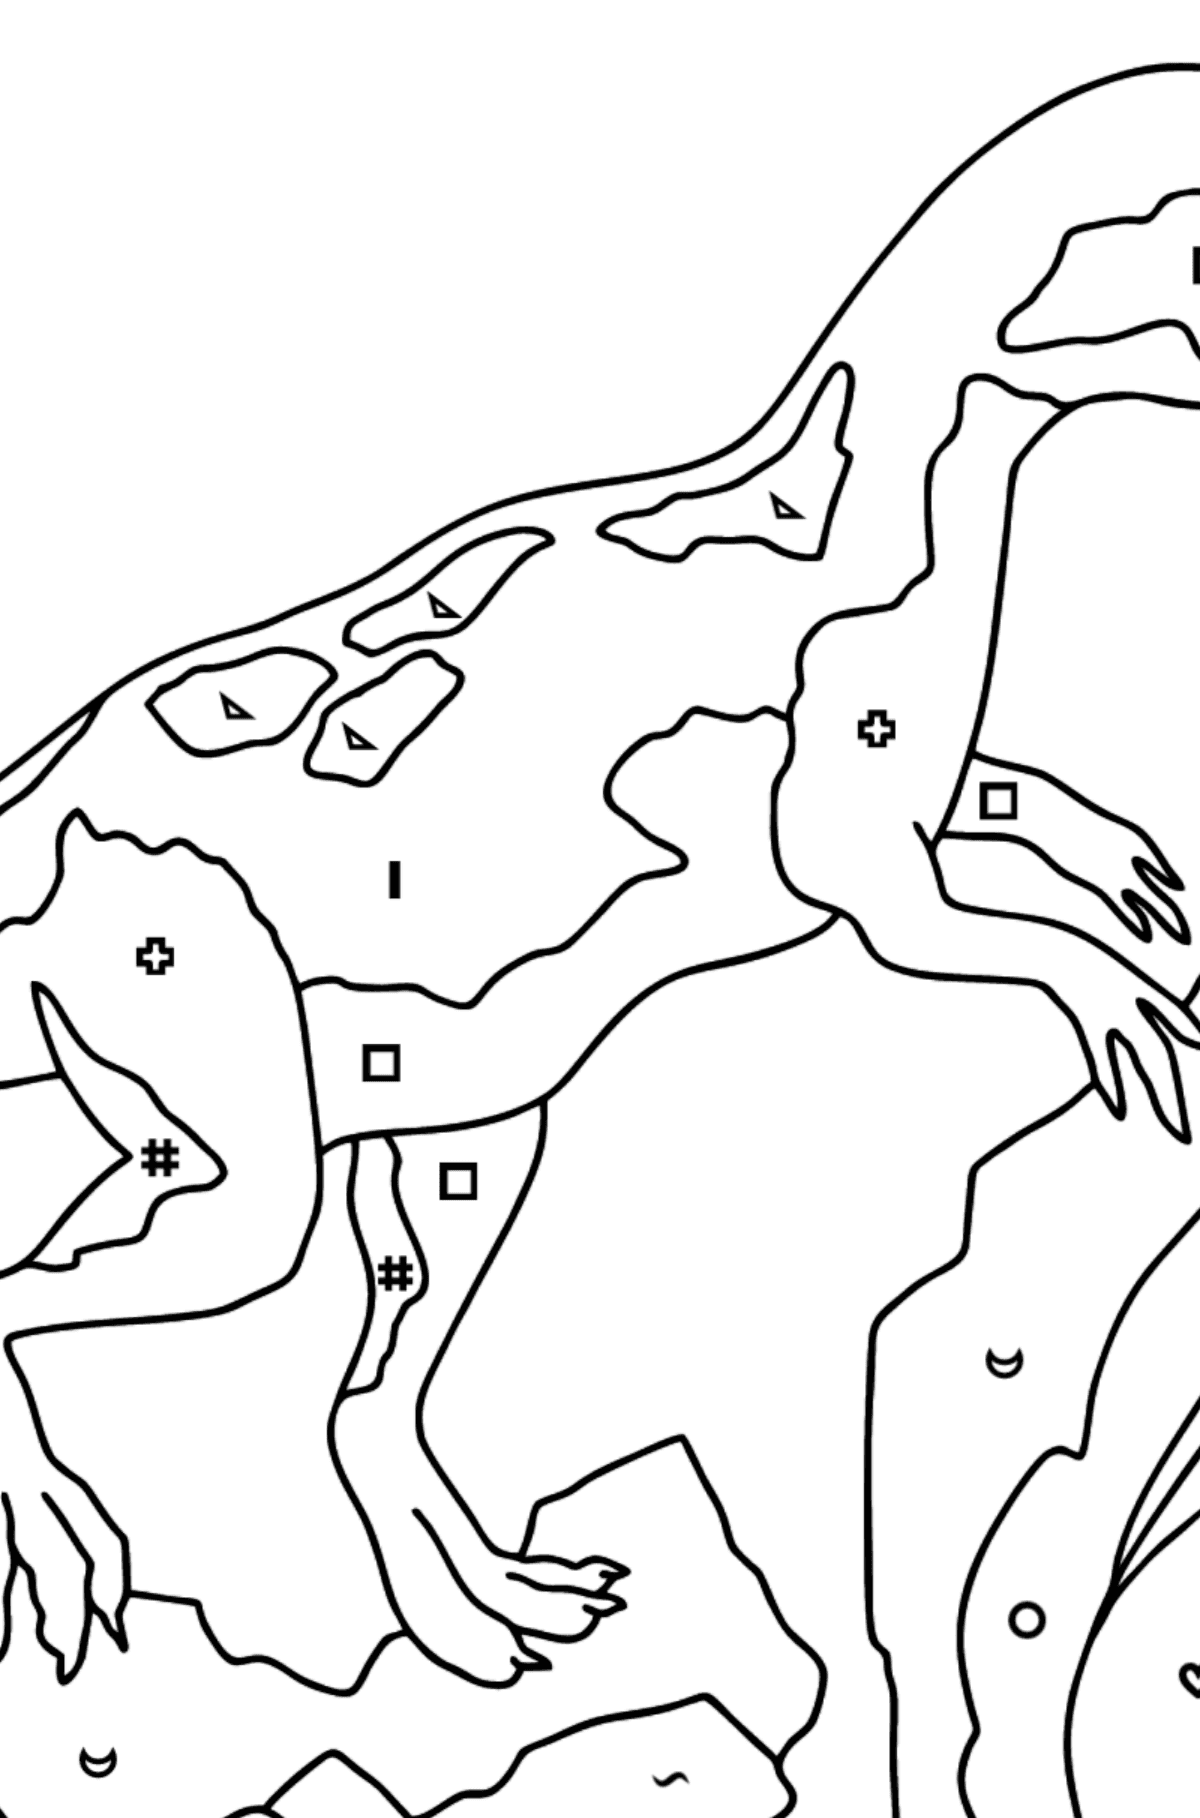 Tegning til fargelegging jurassic dinosaur (vanskelig) - Fargelegge etter symboler og geometriske former for barn